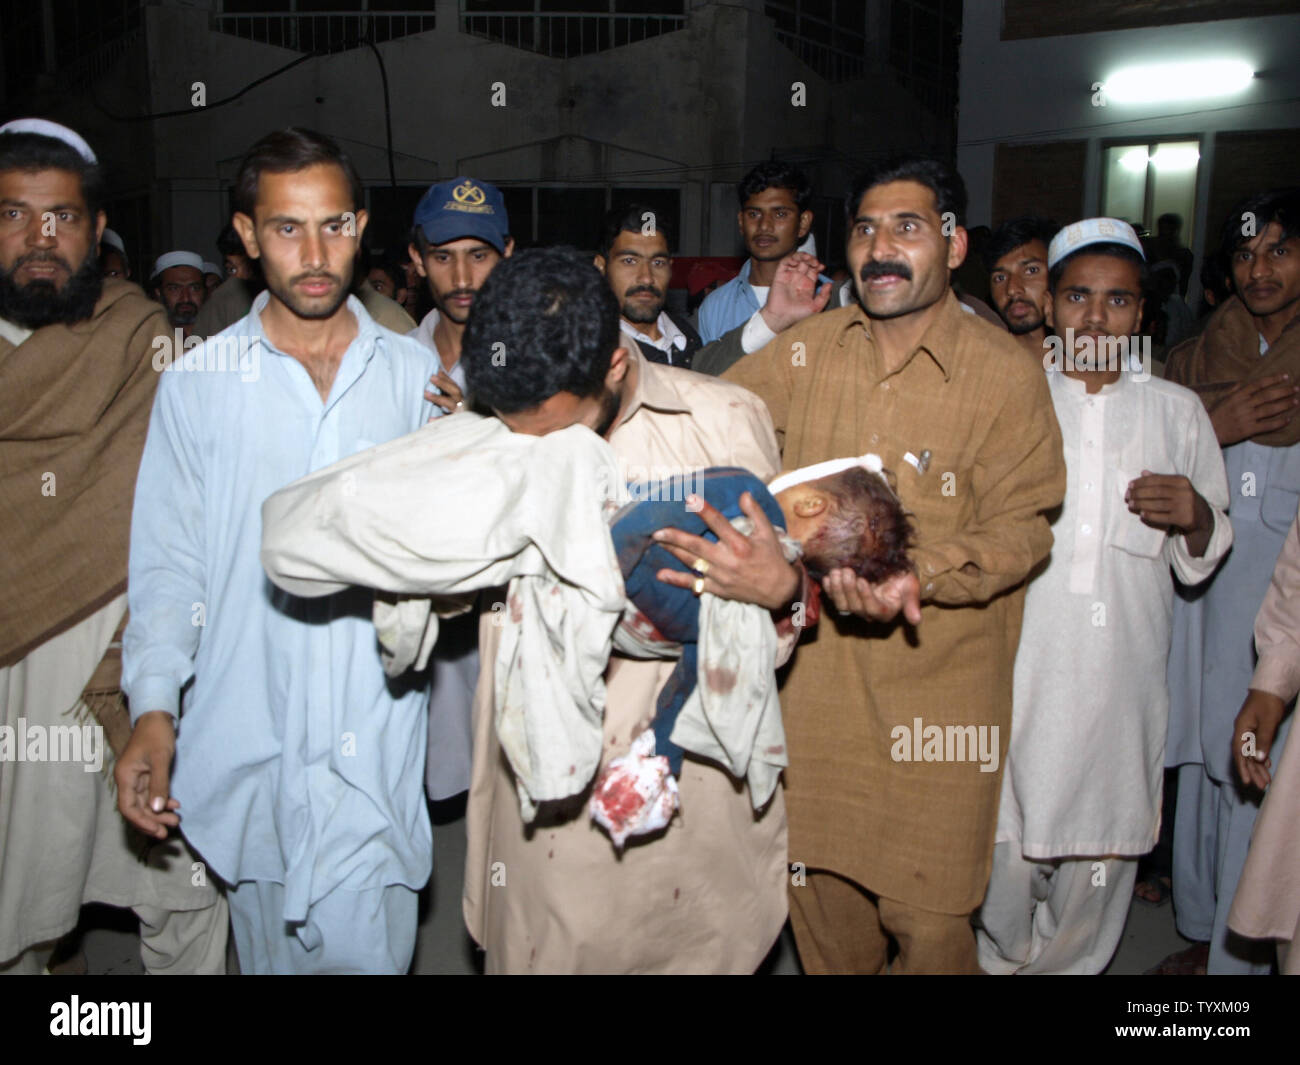 Ein pakistanischer Mann betrauert den Tod seines Sohnes, ein Opfer der Bombardierung ein Auto in Charsadda, Pakistan am 10. November 2009. Die Autobombe explodierte vor einem überfüllten Markt im Nordwesten Pakistans tötet 24 Menschen in dem jüngsten Angriff. UPI/Sajjad Ali Qureshi. Stockfoto